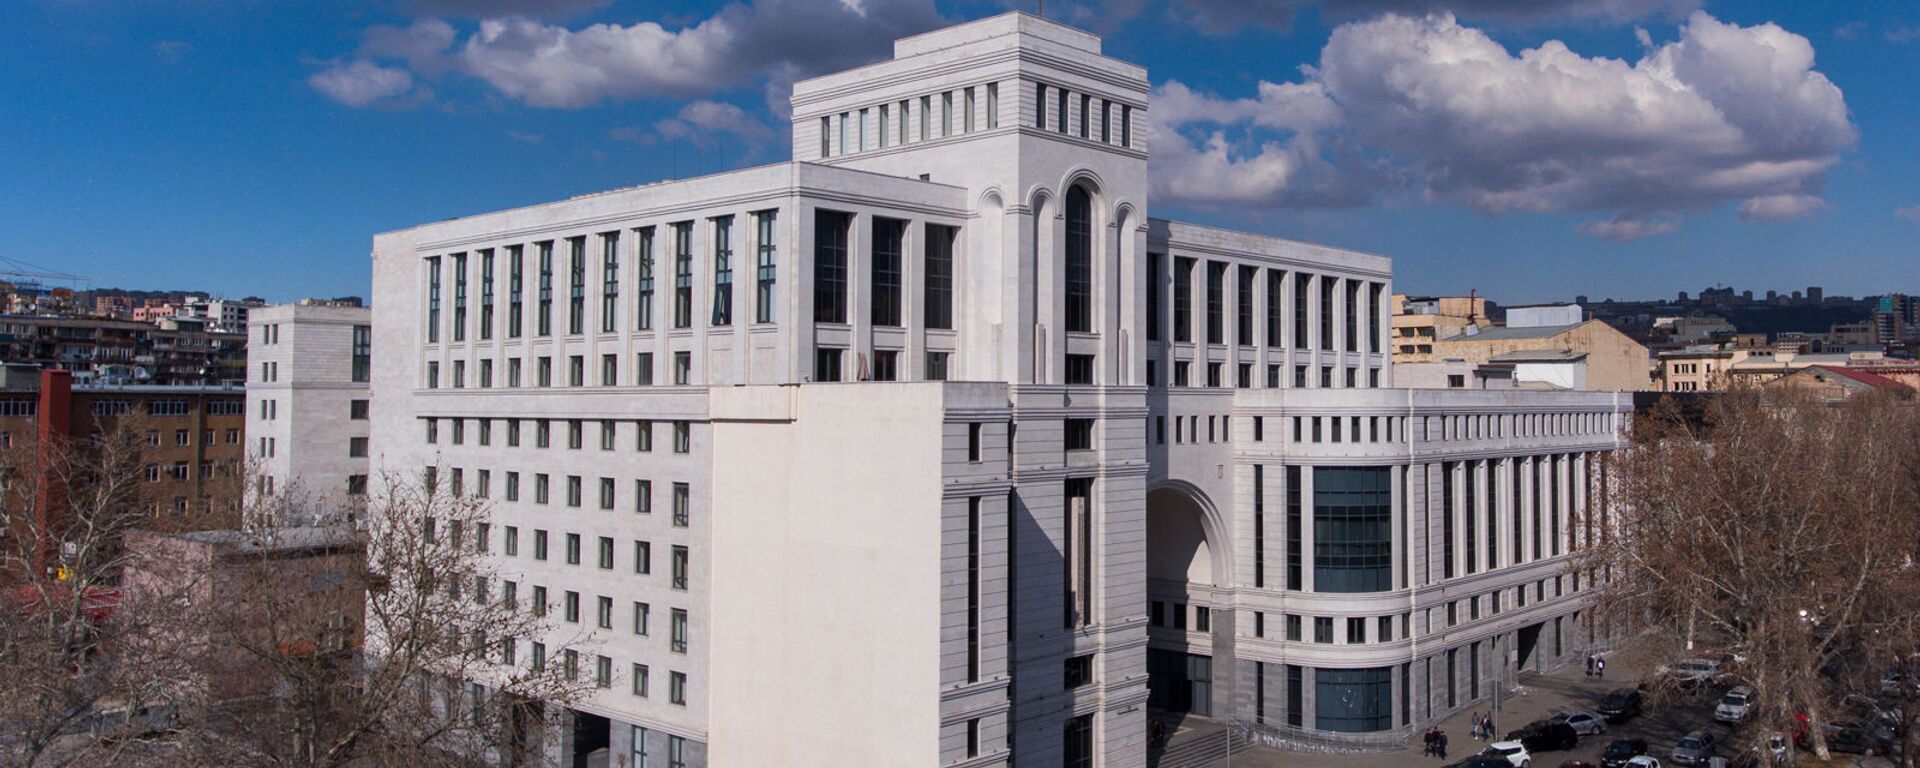 Здание министерства иностранных дел Армении - Sputnik Армения, 1920, 27.02.2021